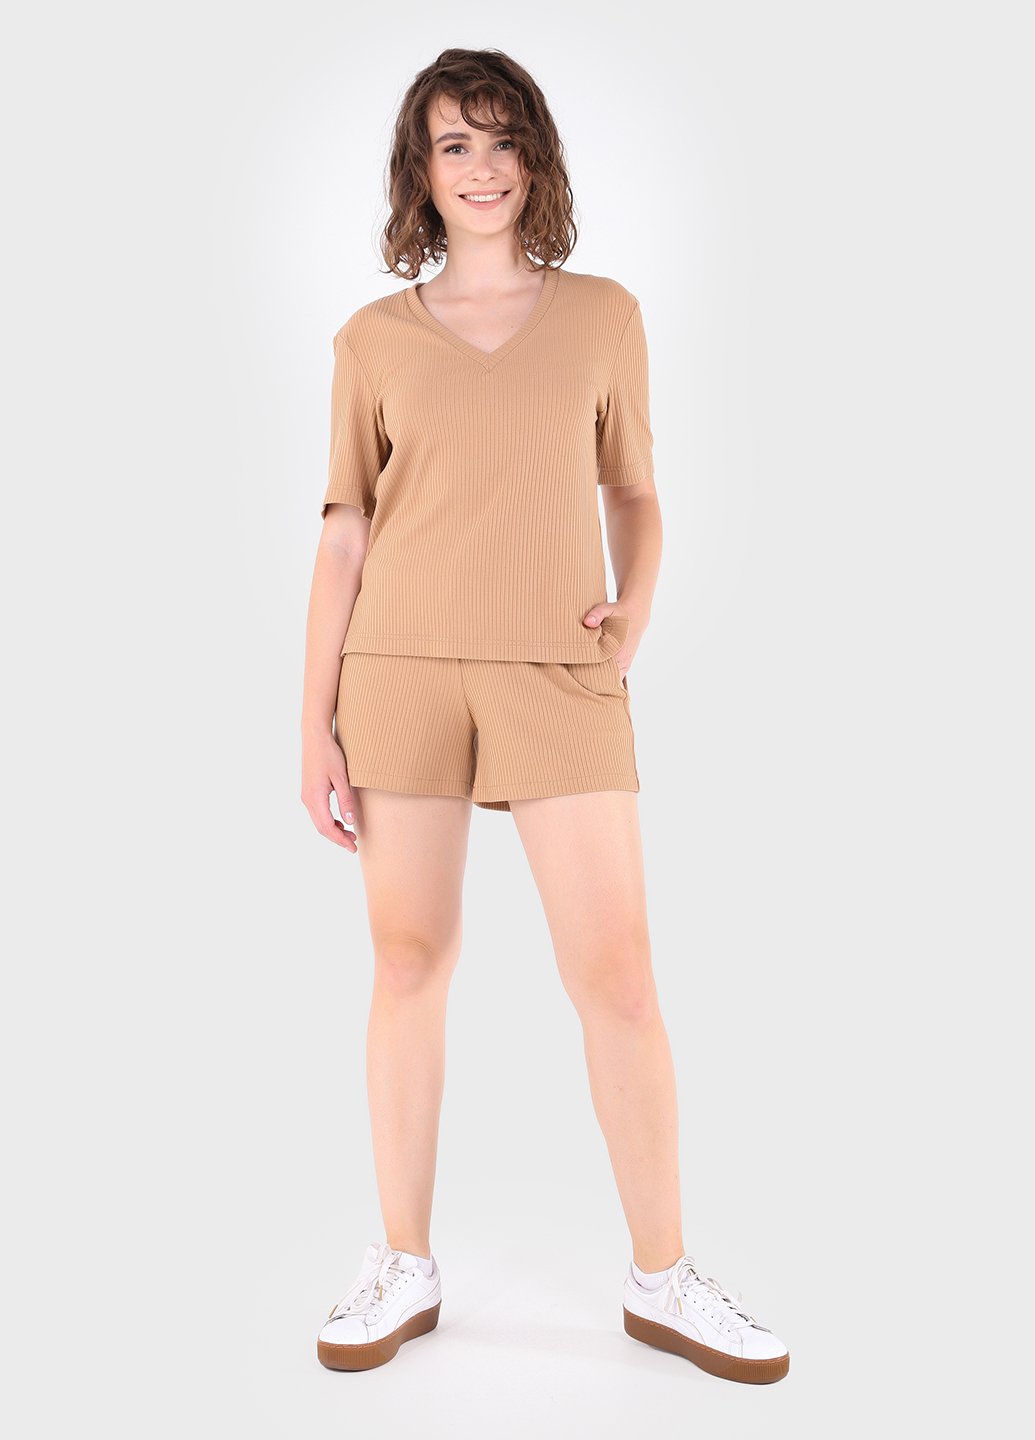 Купить Костюм женский в рубчик песочного цвета Merlini Астурия 100000112, размер 42-44 в интернет-магазине